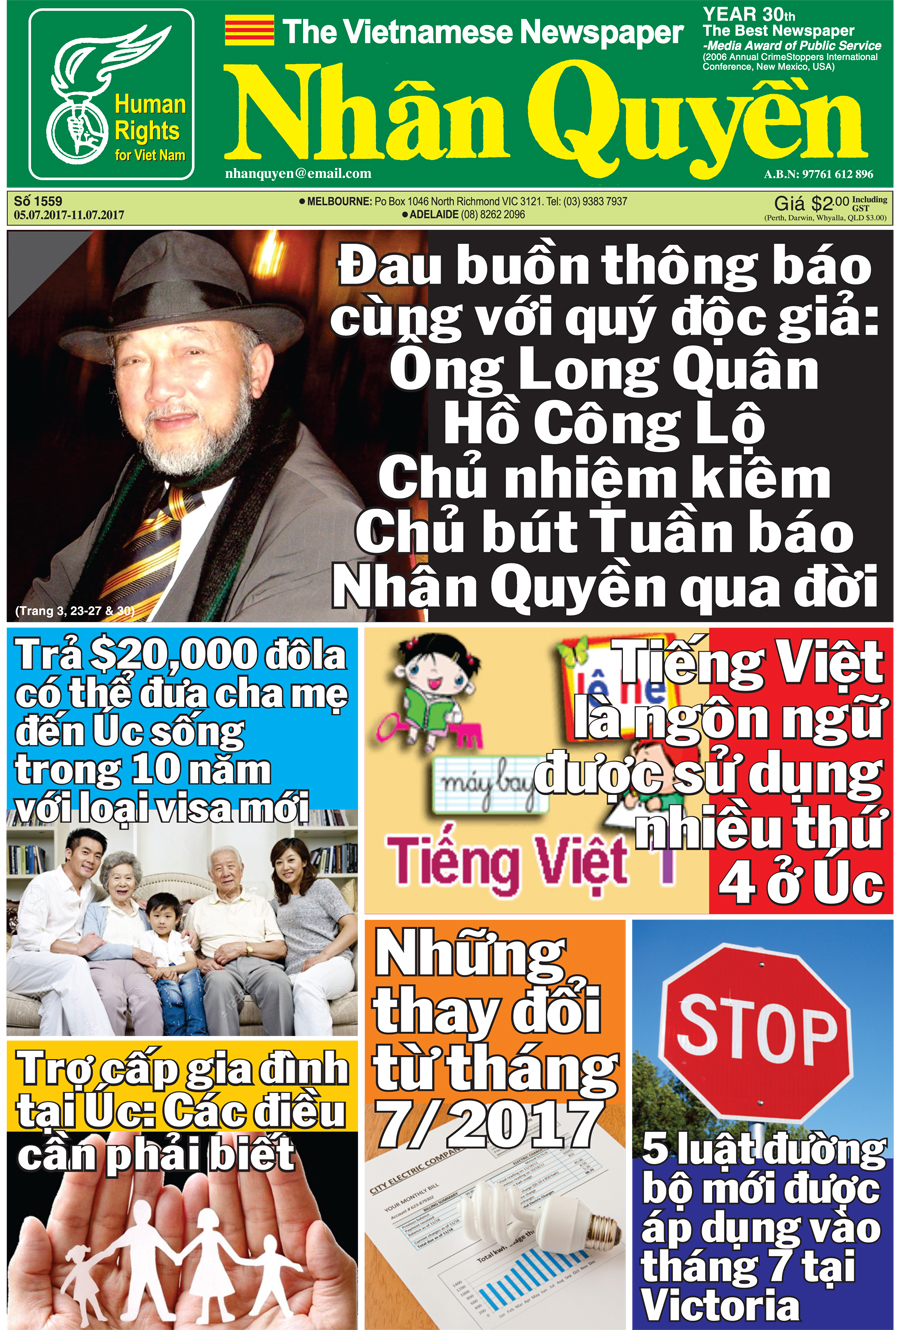 Bao Nhan Quyen SoDac Biet ve Chu But Ho Cong Lo (1)